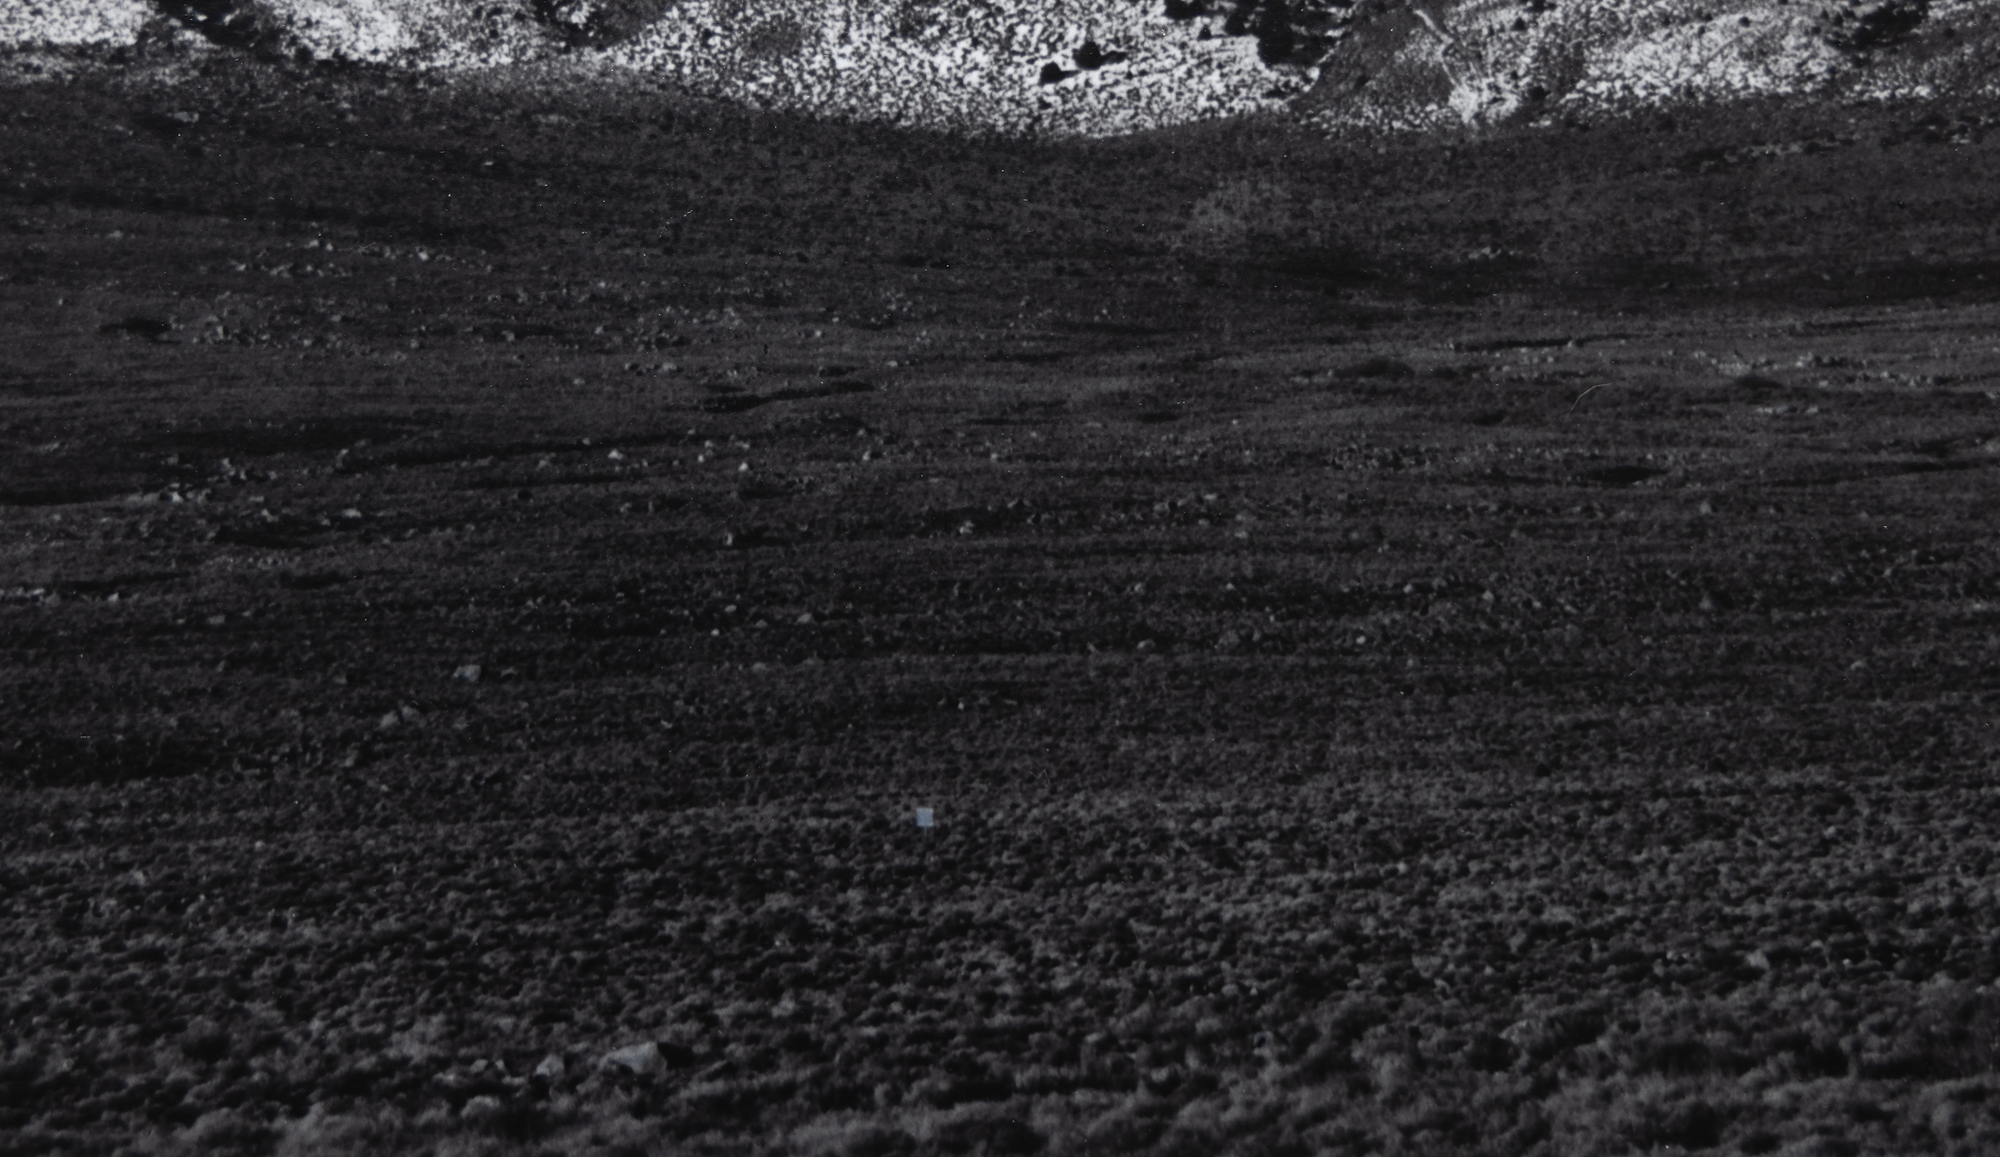 Ansel Adams&#039; Erkundung des Owens Valley und seine Ansichten der hoch aufragenden Ostseite der Sierra Nevada Mountains sind von immenser Bedeutung. Sie gehören zu den ikonischsten Fotografien, die es Adams ermöglichten, die majestätische Weite der Sierra Nevada zu erfassen und gleichzeitig einen lebendigen Eindruck von der Tiefe und Weite des trockenen Talbodens zu vermitteln. Mount Williamson, Sierra Nevada, vom Owens Valley aus fotografiert, wurde wahrscheinlich 1944 aufgenommen, kurz nach der Einführung des Zonensystems, das einen breiten Tonwertumfang und eine ausgewogene Belichtung mit Klarheit sowohl in den Lichtern als auch in den Schatten ermöglichte. Das vorliegende Exemplar, das im August 1978 gedruckt wurde, befindet sich in der Sammlung vieler Museen, gehört aber unter Sammlern zu den selteneren Abzügen von Ansel Adams.